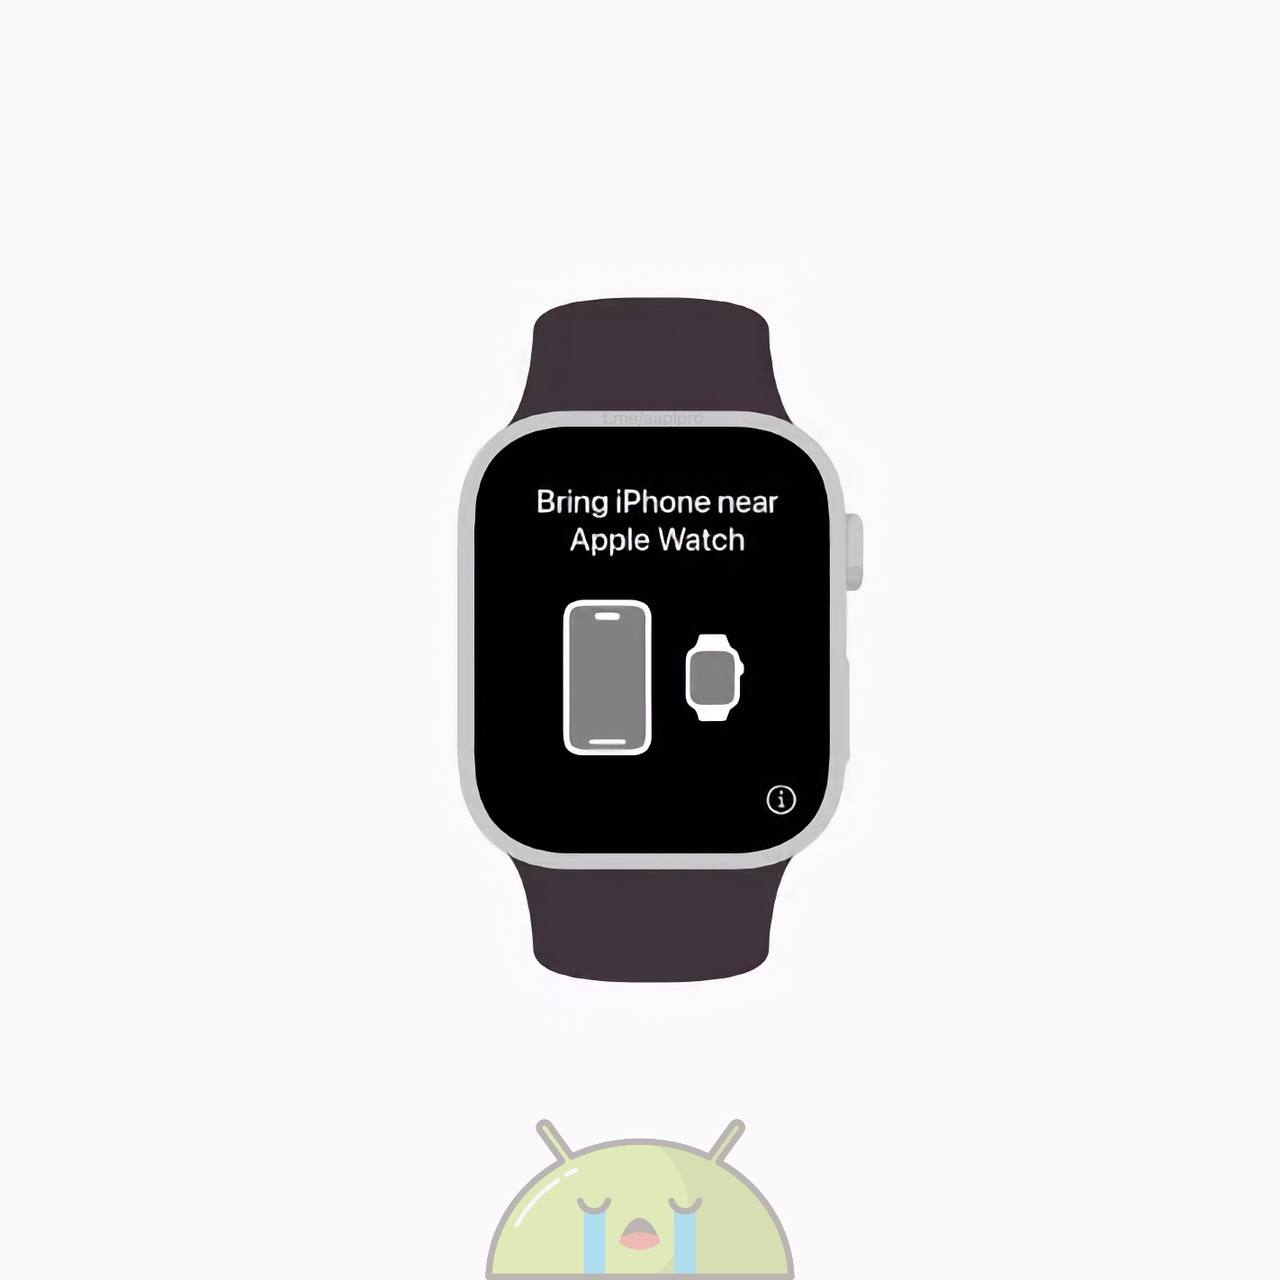 Проекту Apple Watch для пользователей Android не судьба сбыться, всё потому, что для этого нужен iPhone с Apple ID, в любом случае. Это выглядит ещё более иронично в перспективе.